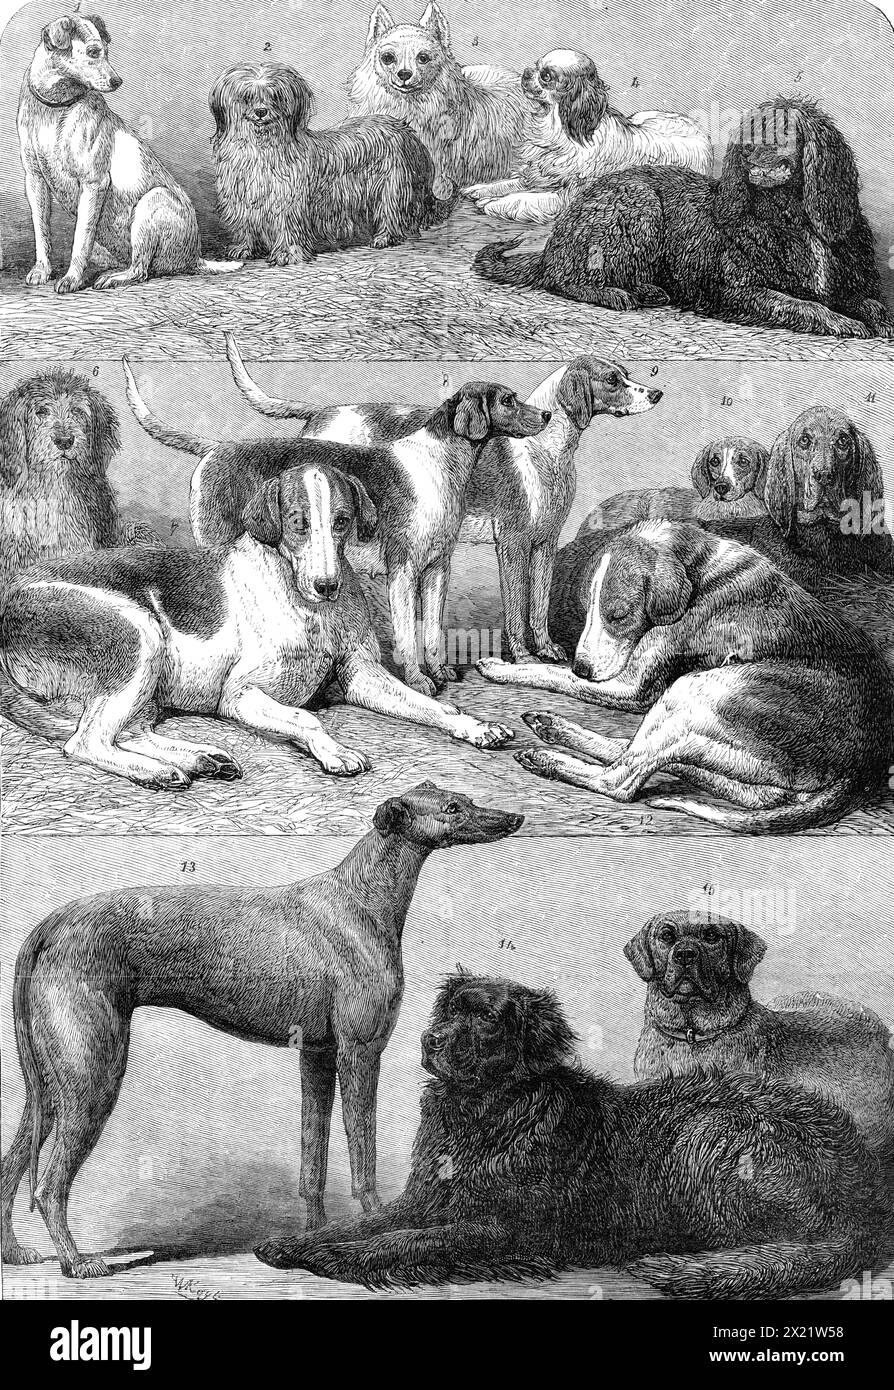 Prize Dogs of the Second International Dog Show presso l'Islington Agricultural Hall, 1864. "Ognuno di questi cani ha vinto un primo premio nella propria classe, tranne i "Harriers" del Principe di Galles (tre coppie) e il suo mastino indiano, che ha ottenuto il secondo premio, anche se molto ammirato... No 1, Mr. T. Wotton's Fox-terrier; 2, Mr. R, W. Boyle's Syke terrier; 3, Mr. W. Eaton's Pomeranian; 4, Mr. J. Hawkins's Blenheim spaniel; 5, Mr. B. W. Boyle's Irish Water-spaniel; 6, Mr. Tyringham's otter-hound Sailor; 7, Mr. C. Barnett's Fox-hound Stud; 8, Mr. G. Race's Harrier Garnish; 9, uno dei signori Beard A. Foto Stock